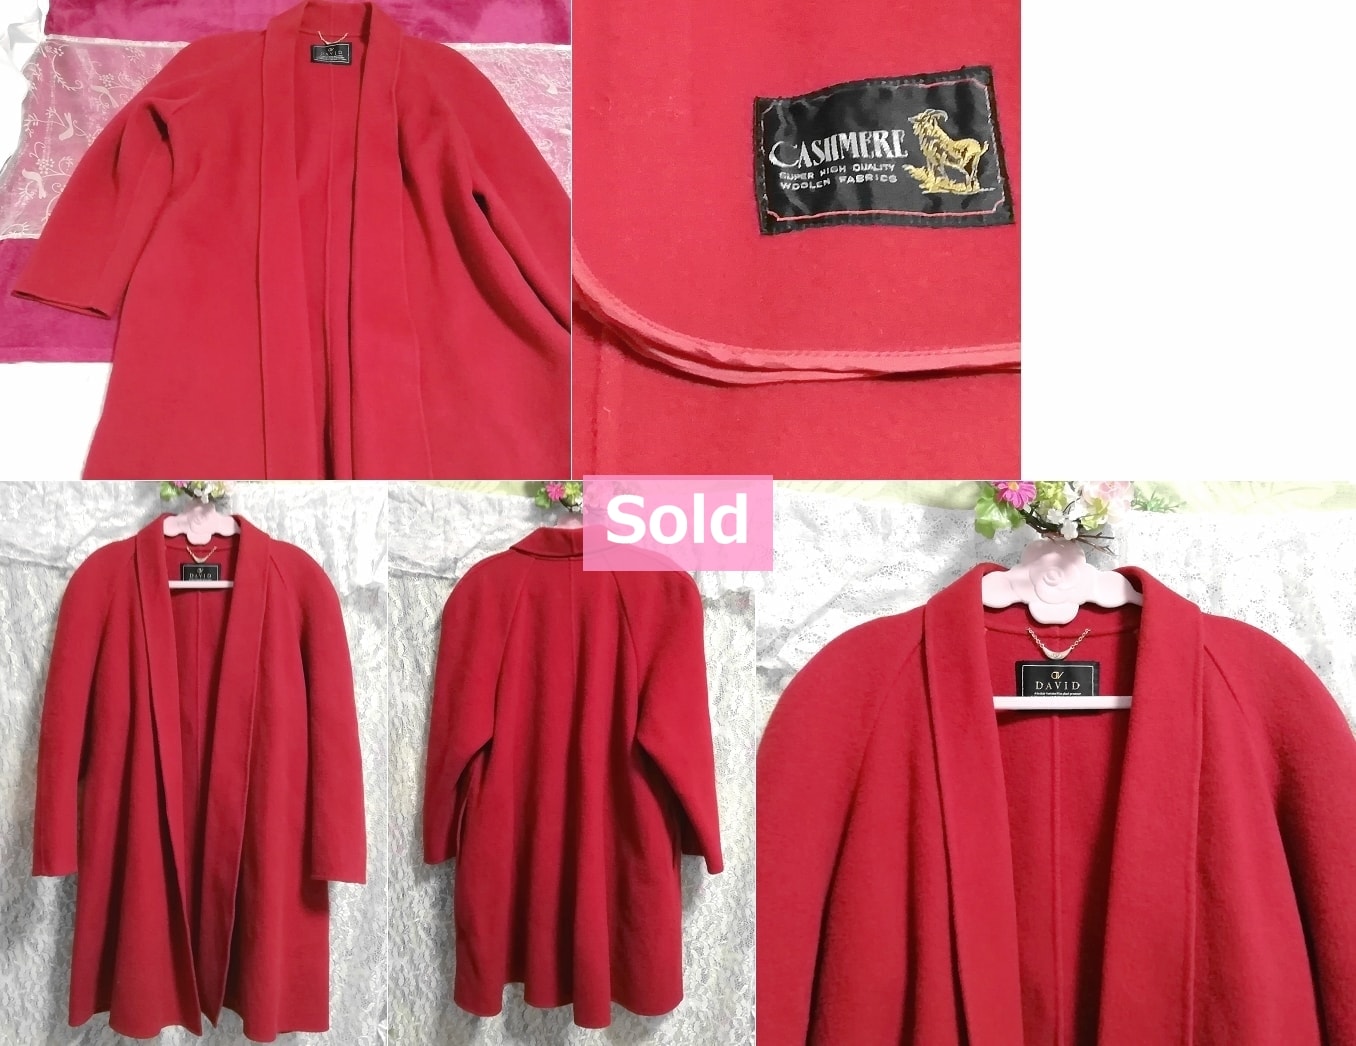 DAVID red cashmere cardigan haori / coat / cloak / outer Red cashmere cardigan coat mantle